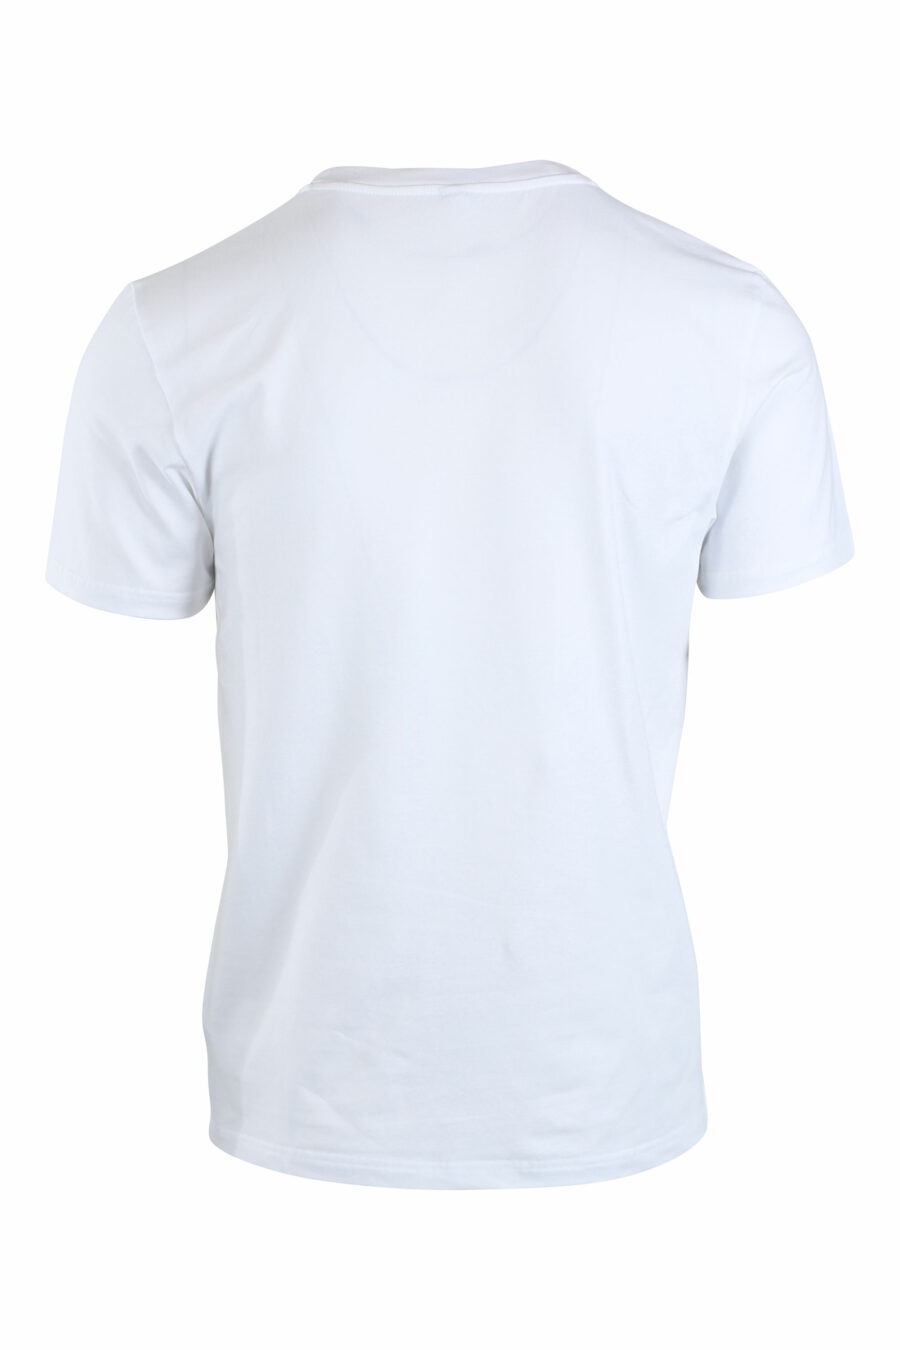 Camiseta blanca con logo pequeño en dorado y strass - IMG 2659